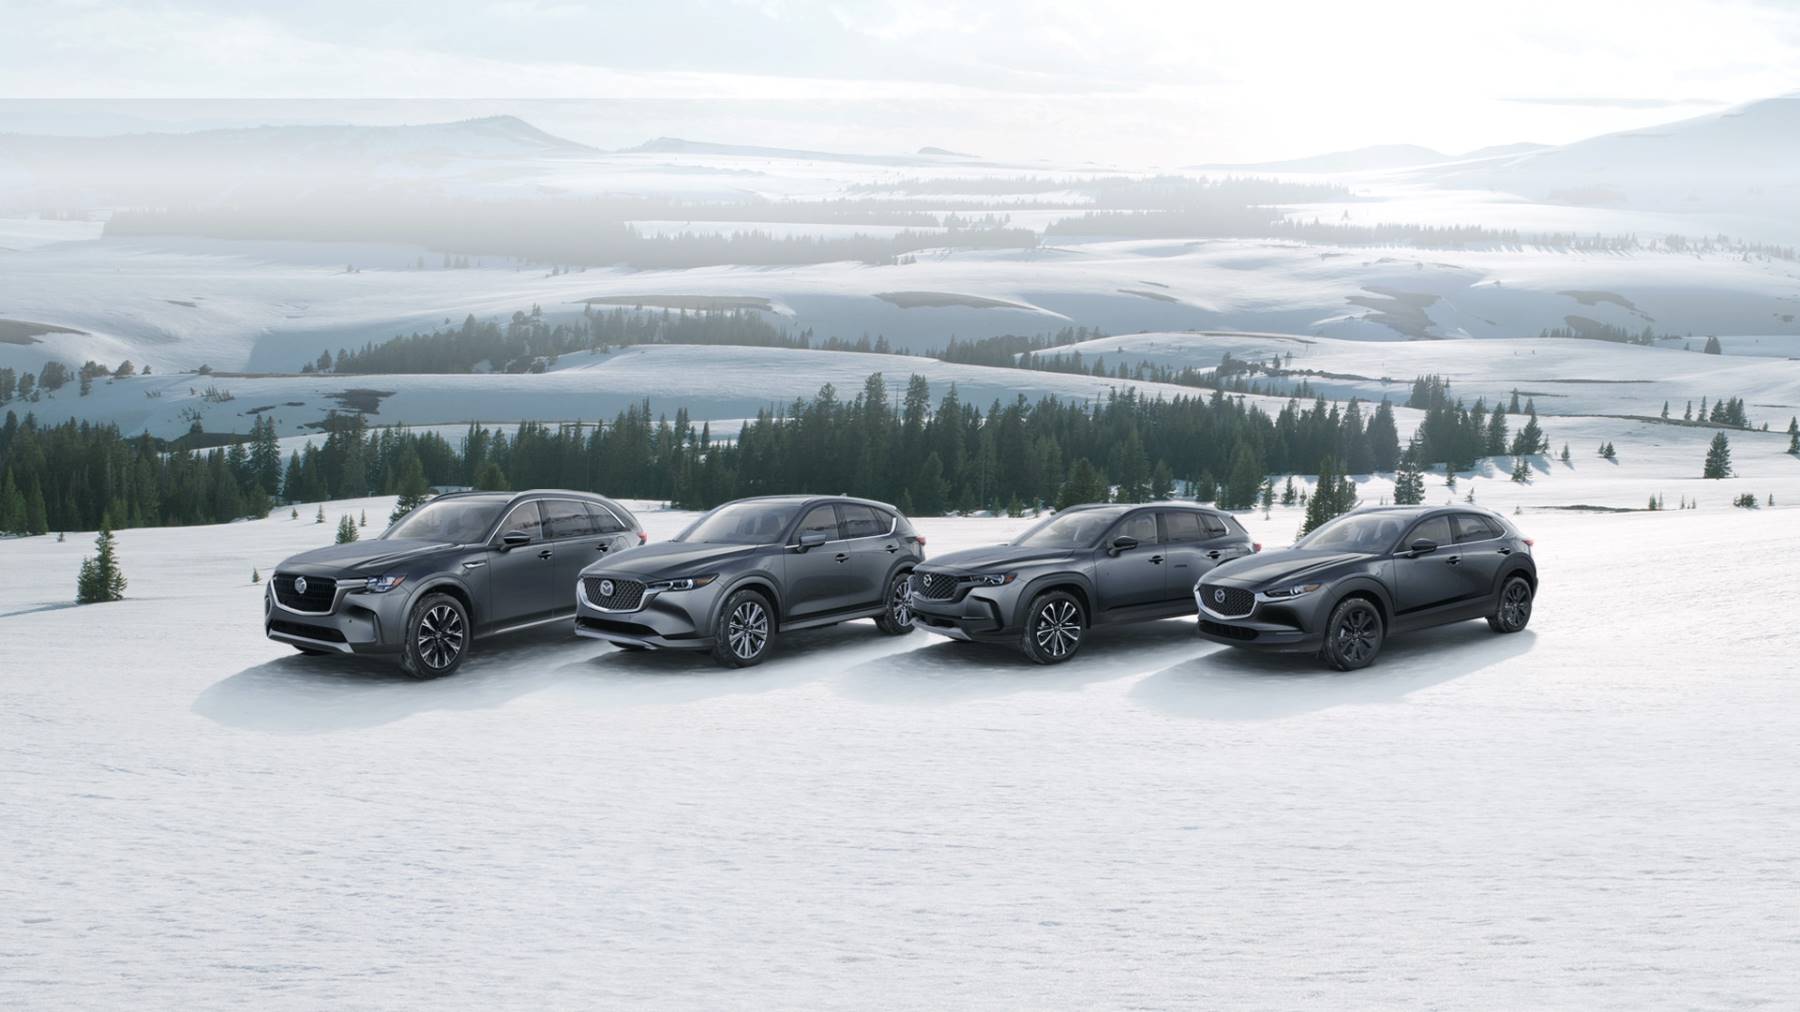 Mazda cars in the snow